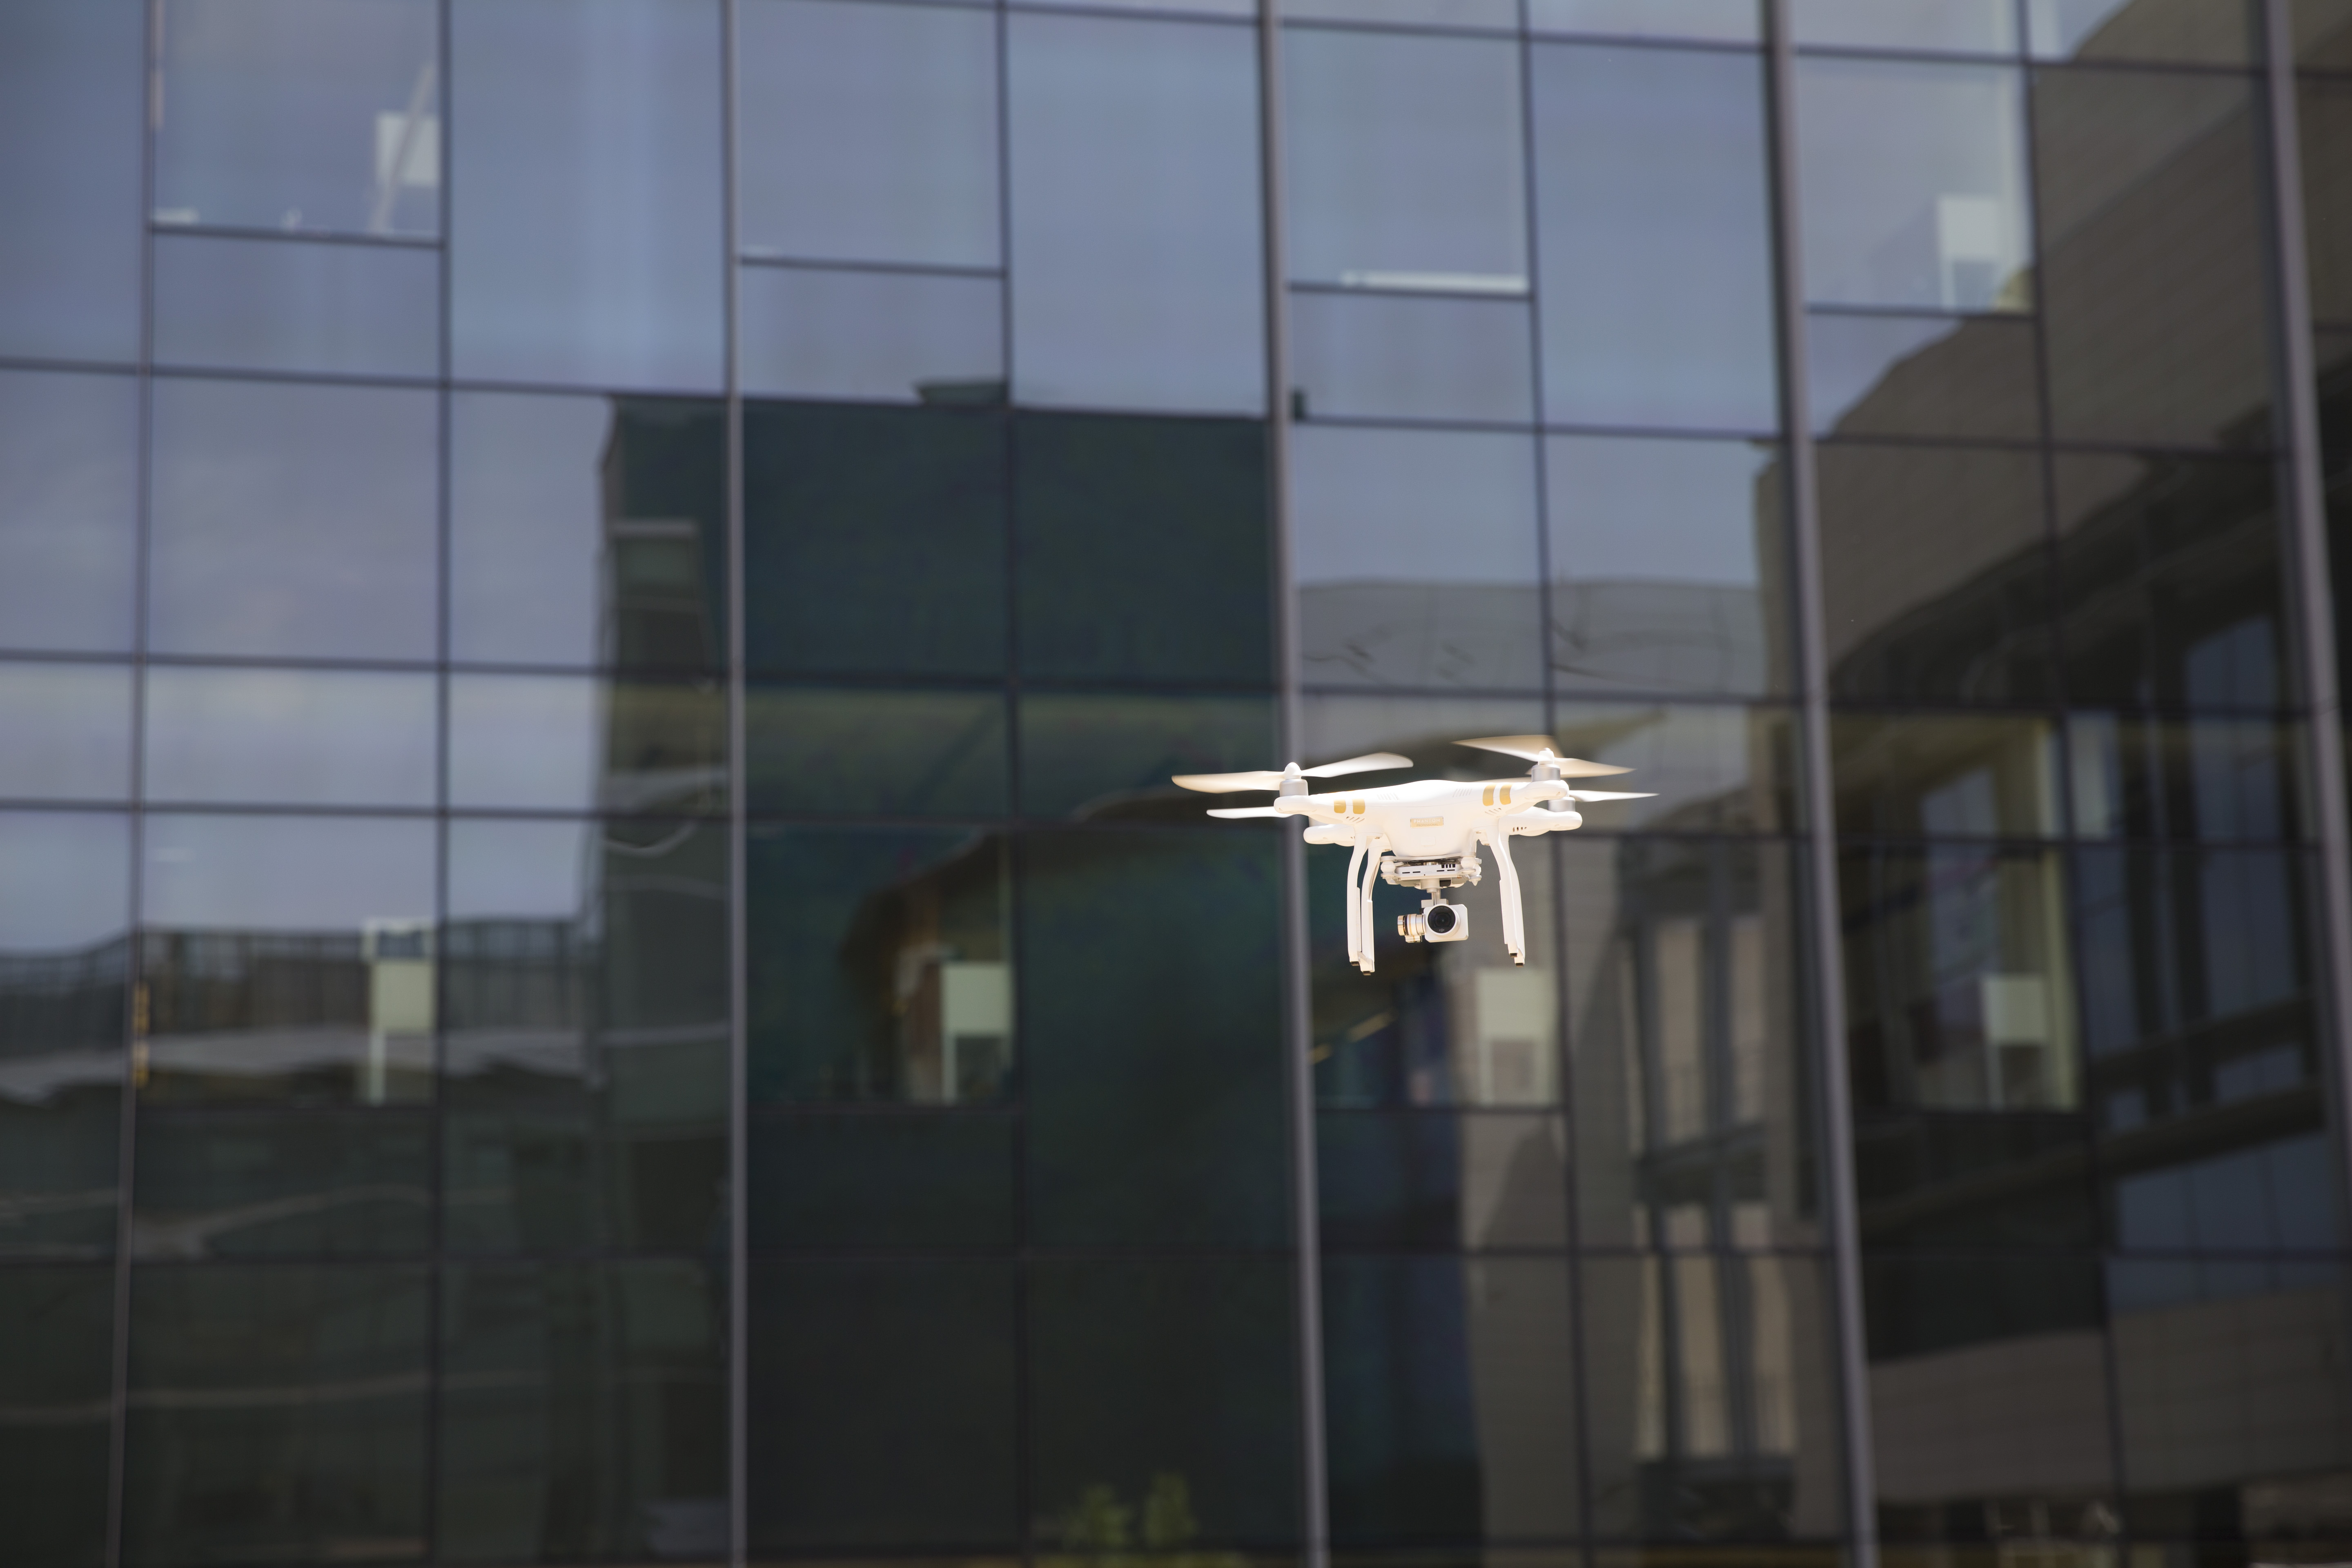 Drone tech takes off